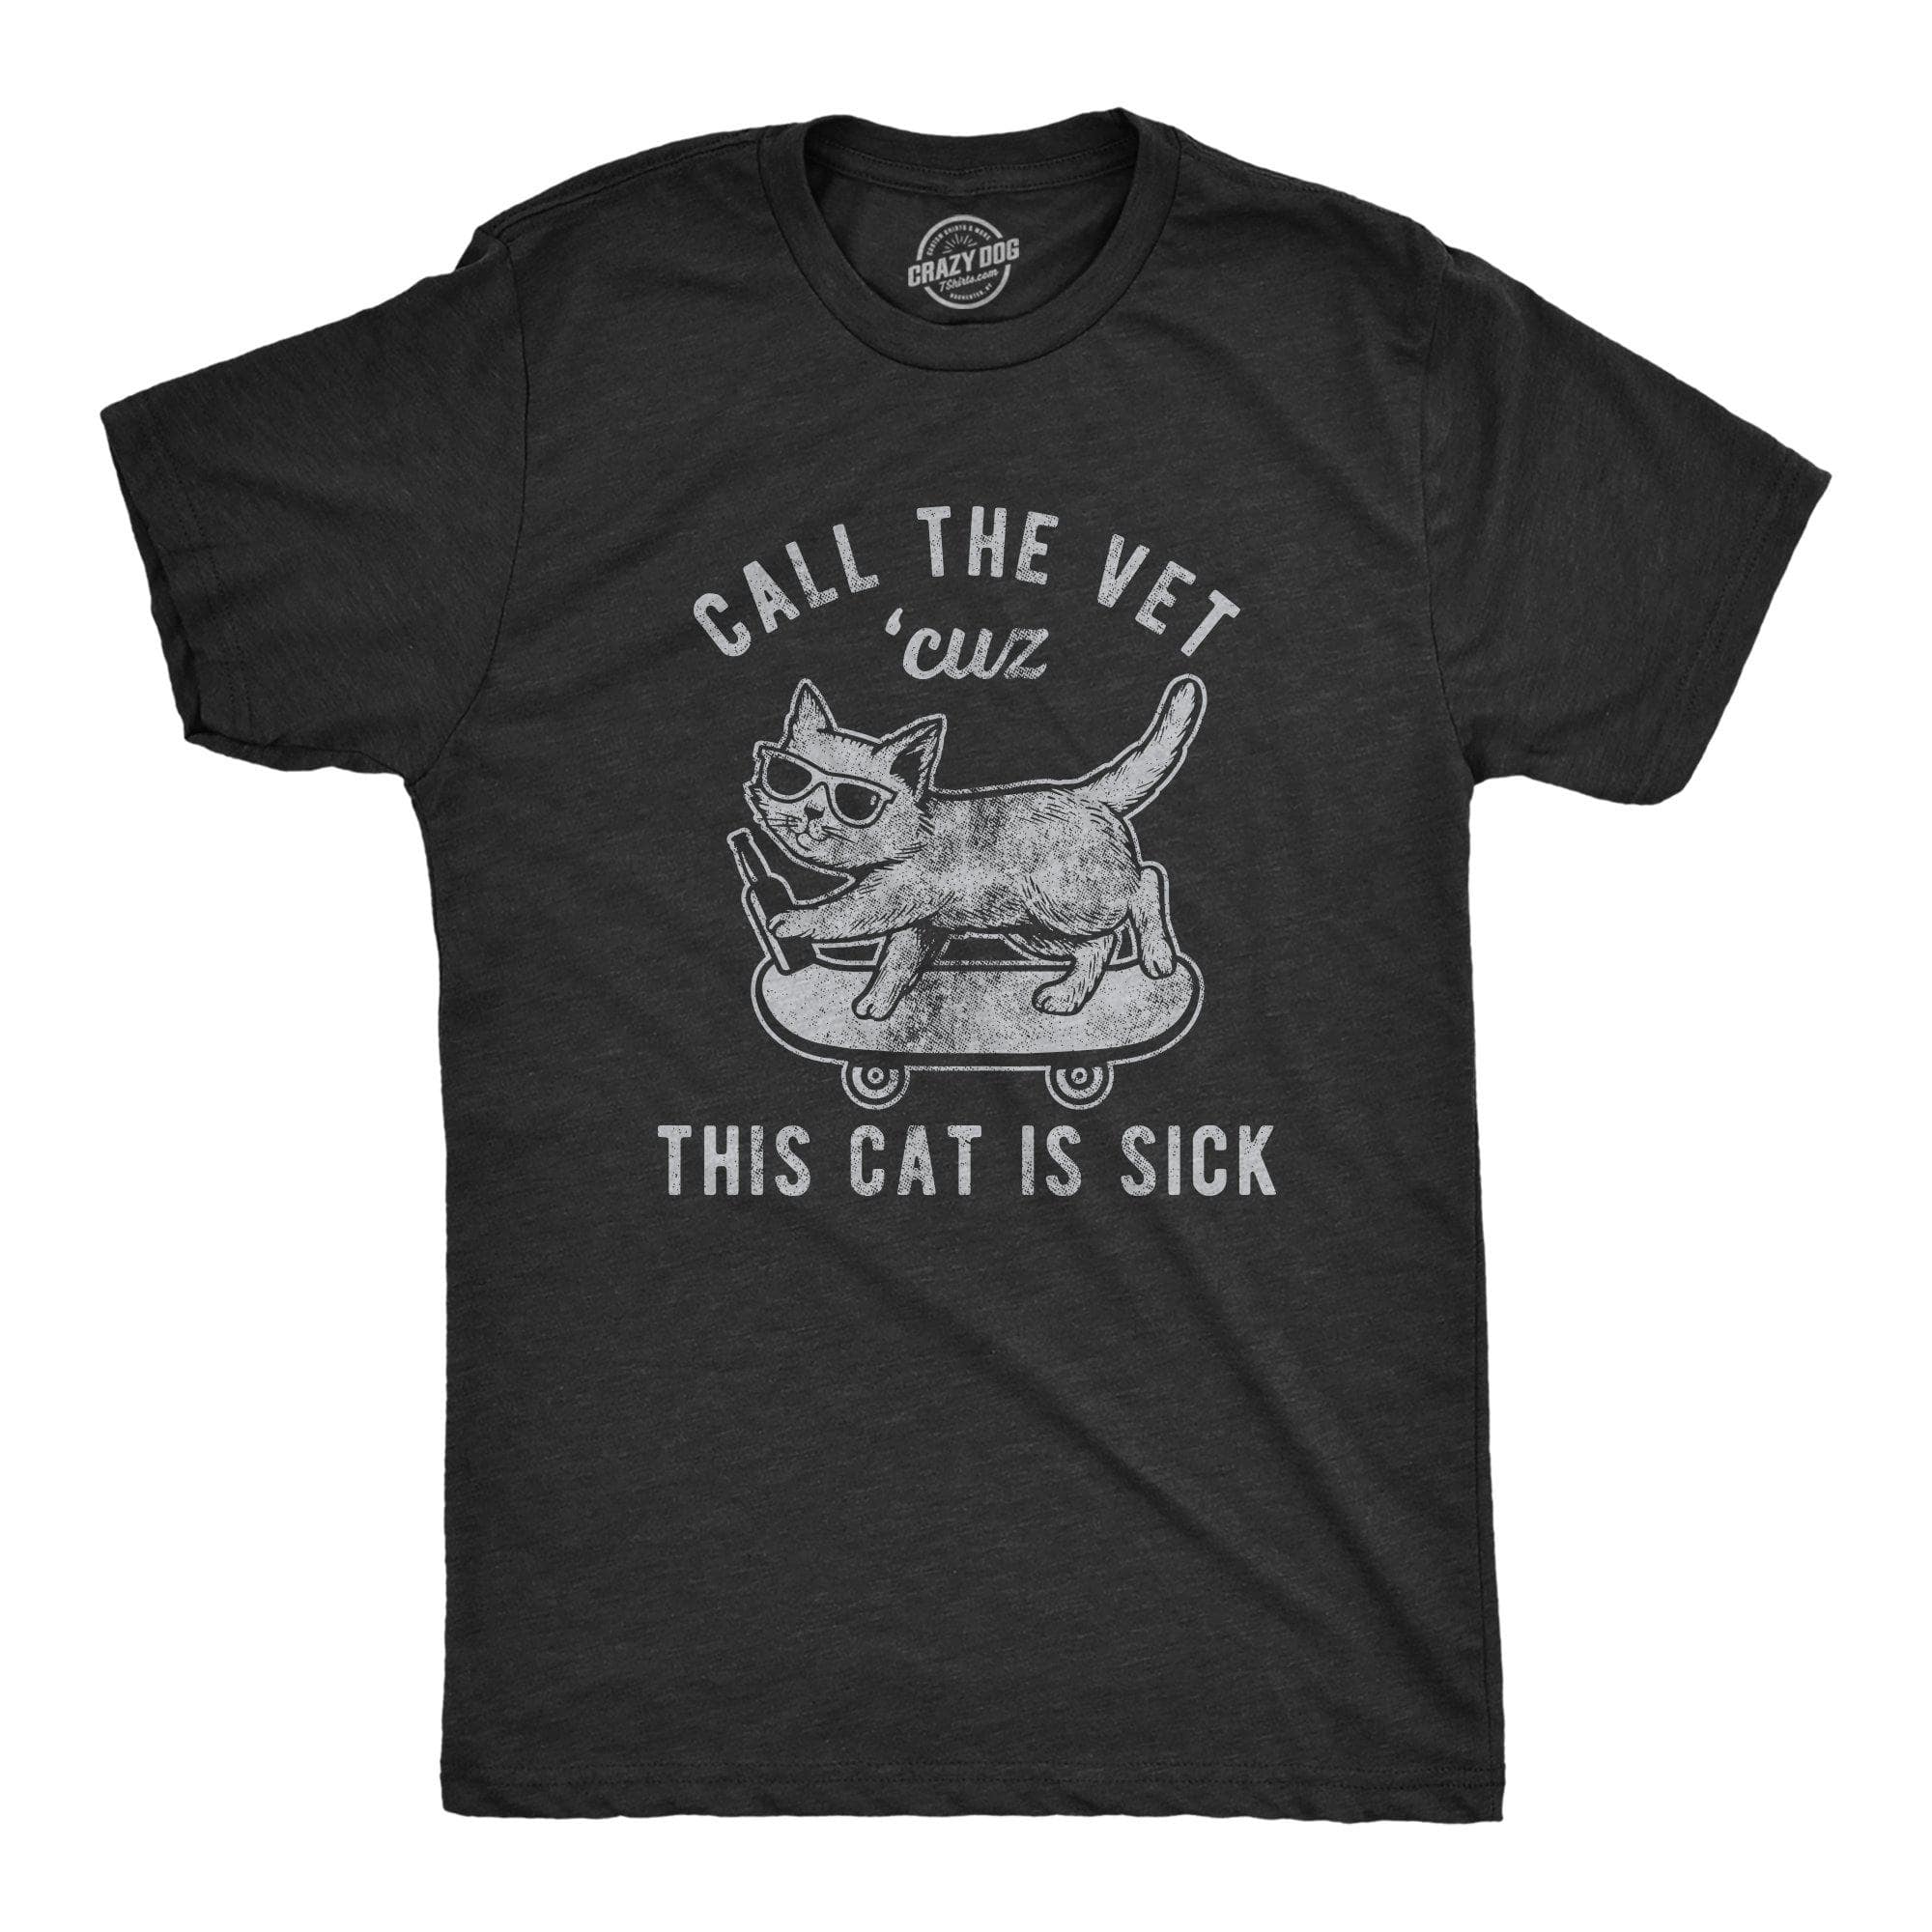 Call The Vet Cuz This Cat Is Sick Men's Tshirt - Crazy Dog T-Shirts